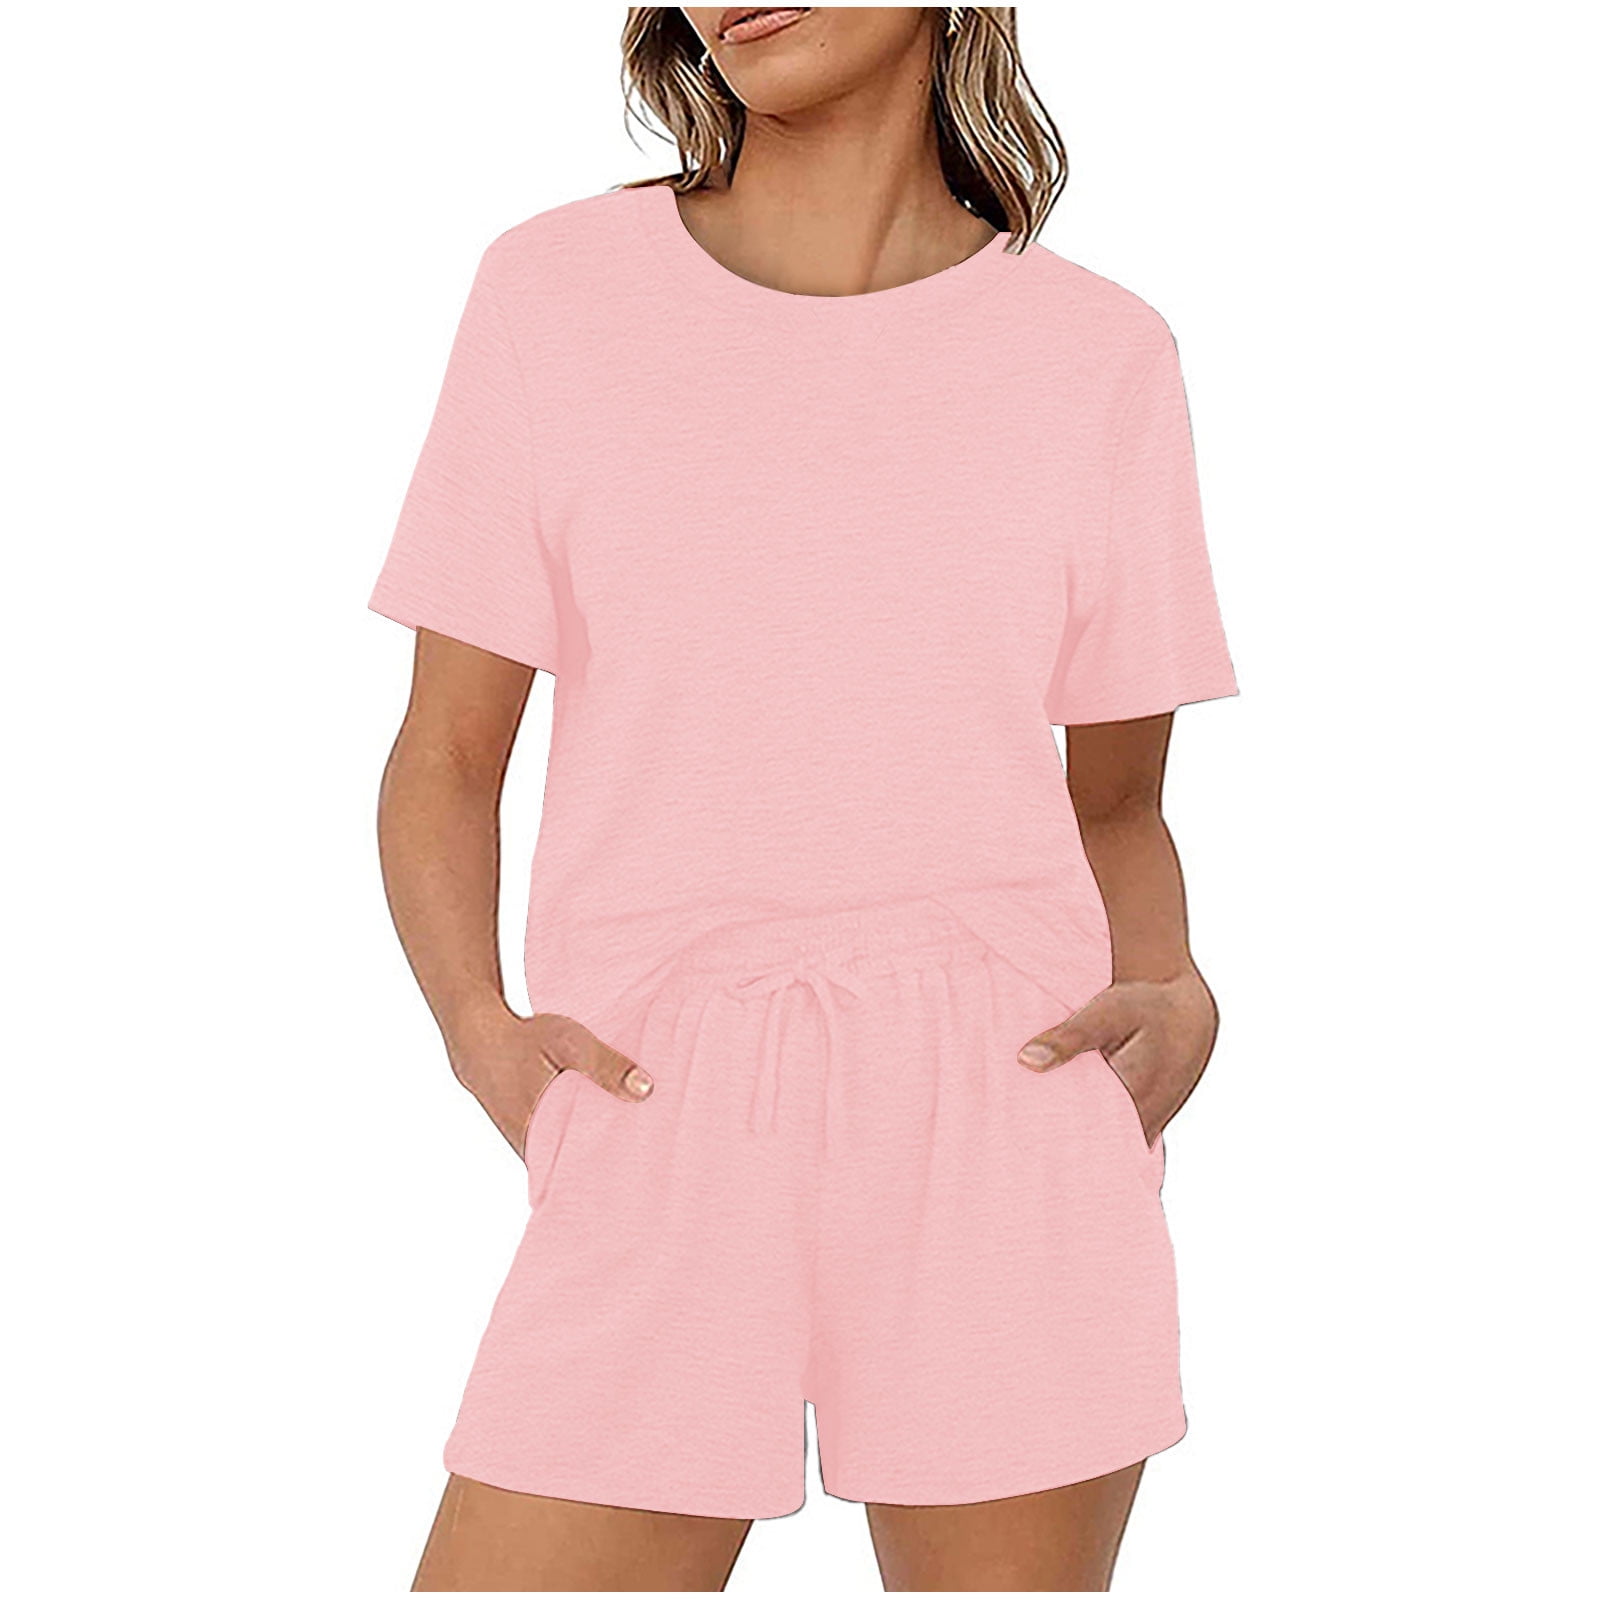 Women's Summer Casual Pajamas Sets Short Sleeve Crewneck Tops Shirts ...